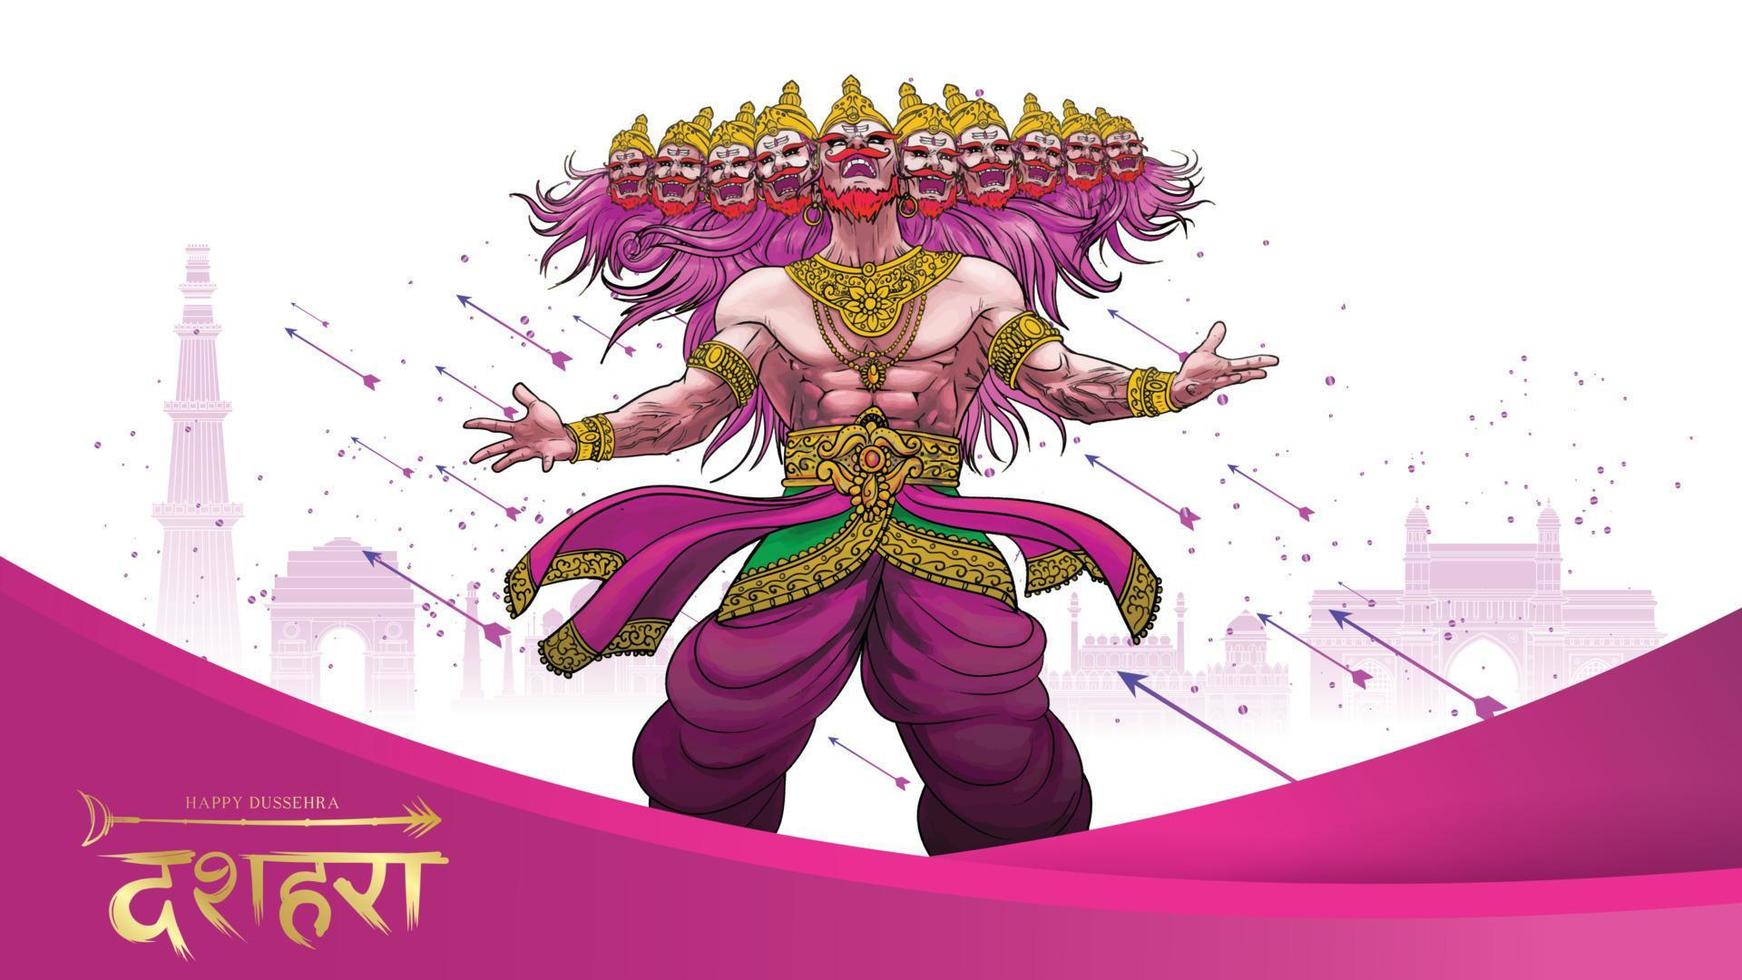 illustrazione vettoriale creativa di lord rama che uccide ravana nel felice festival del poster di dussehra navratri dell'india. traduzione dussehra